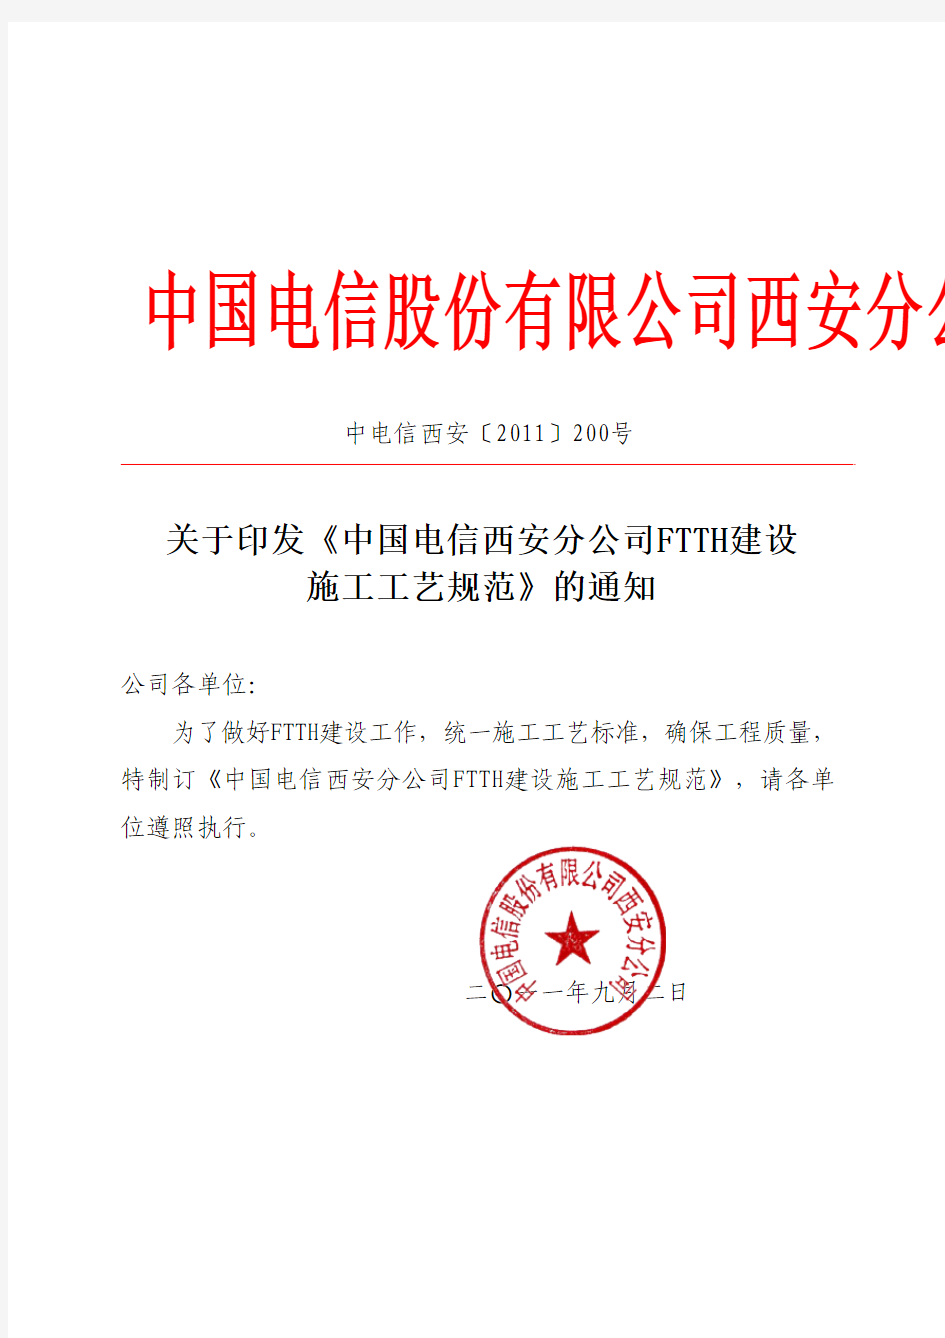 中电信西安(2011)200号关于印发《中国电信西安分公司FTTH建设施工工艺规范》的通知pdf